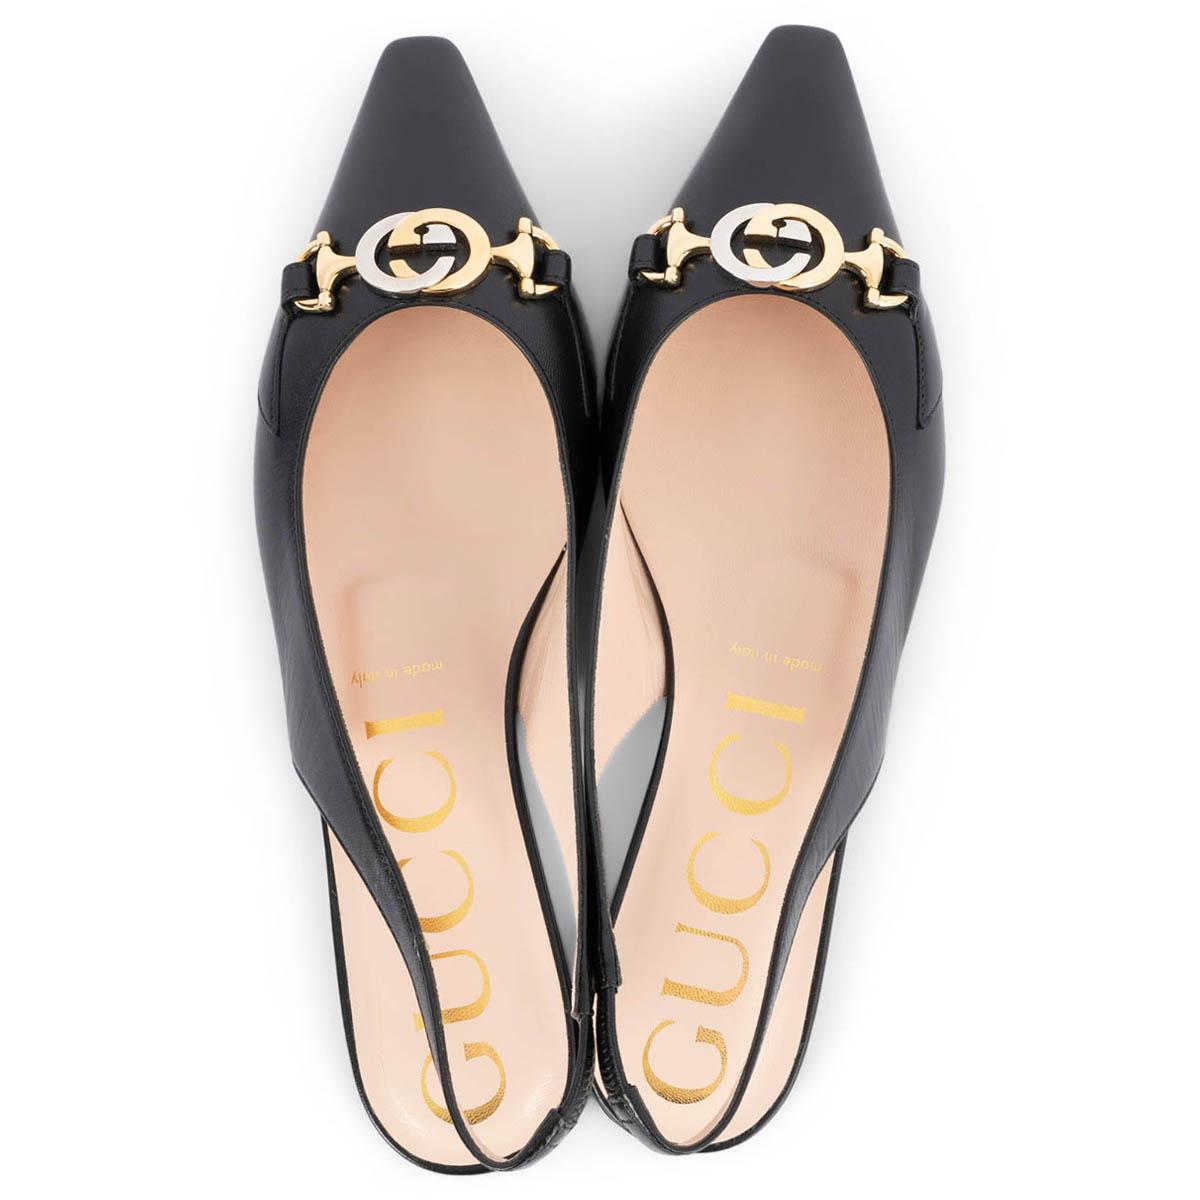  GUCCI cuir noir ZUMI POINTED TOE SLINGBACK Ballet Flats Shoes 39 Pour femmes 